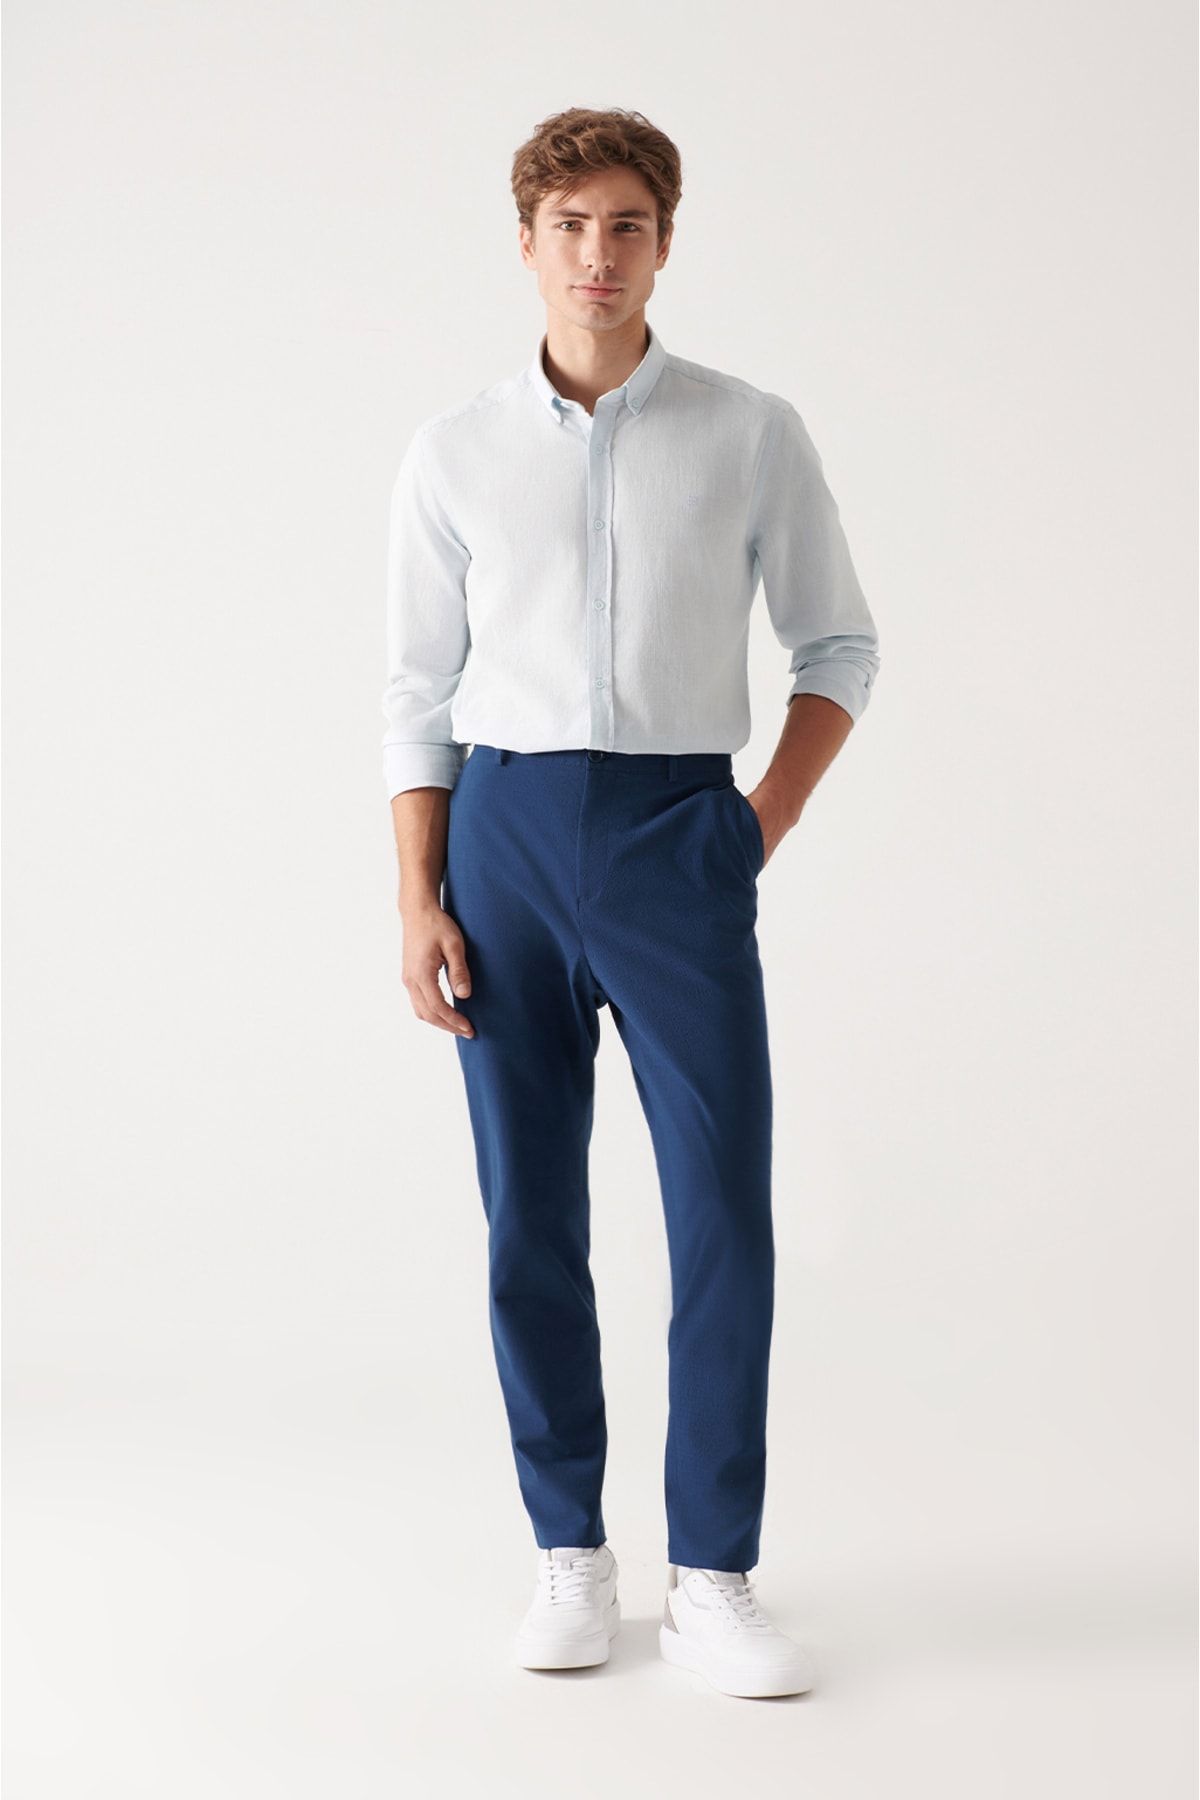 شلوار پارچه ای جیب دار زیپ دار دکمه ای مدل راسته کلاسیک مردانه آوا Avva (برند ترکیه)